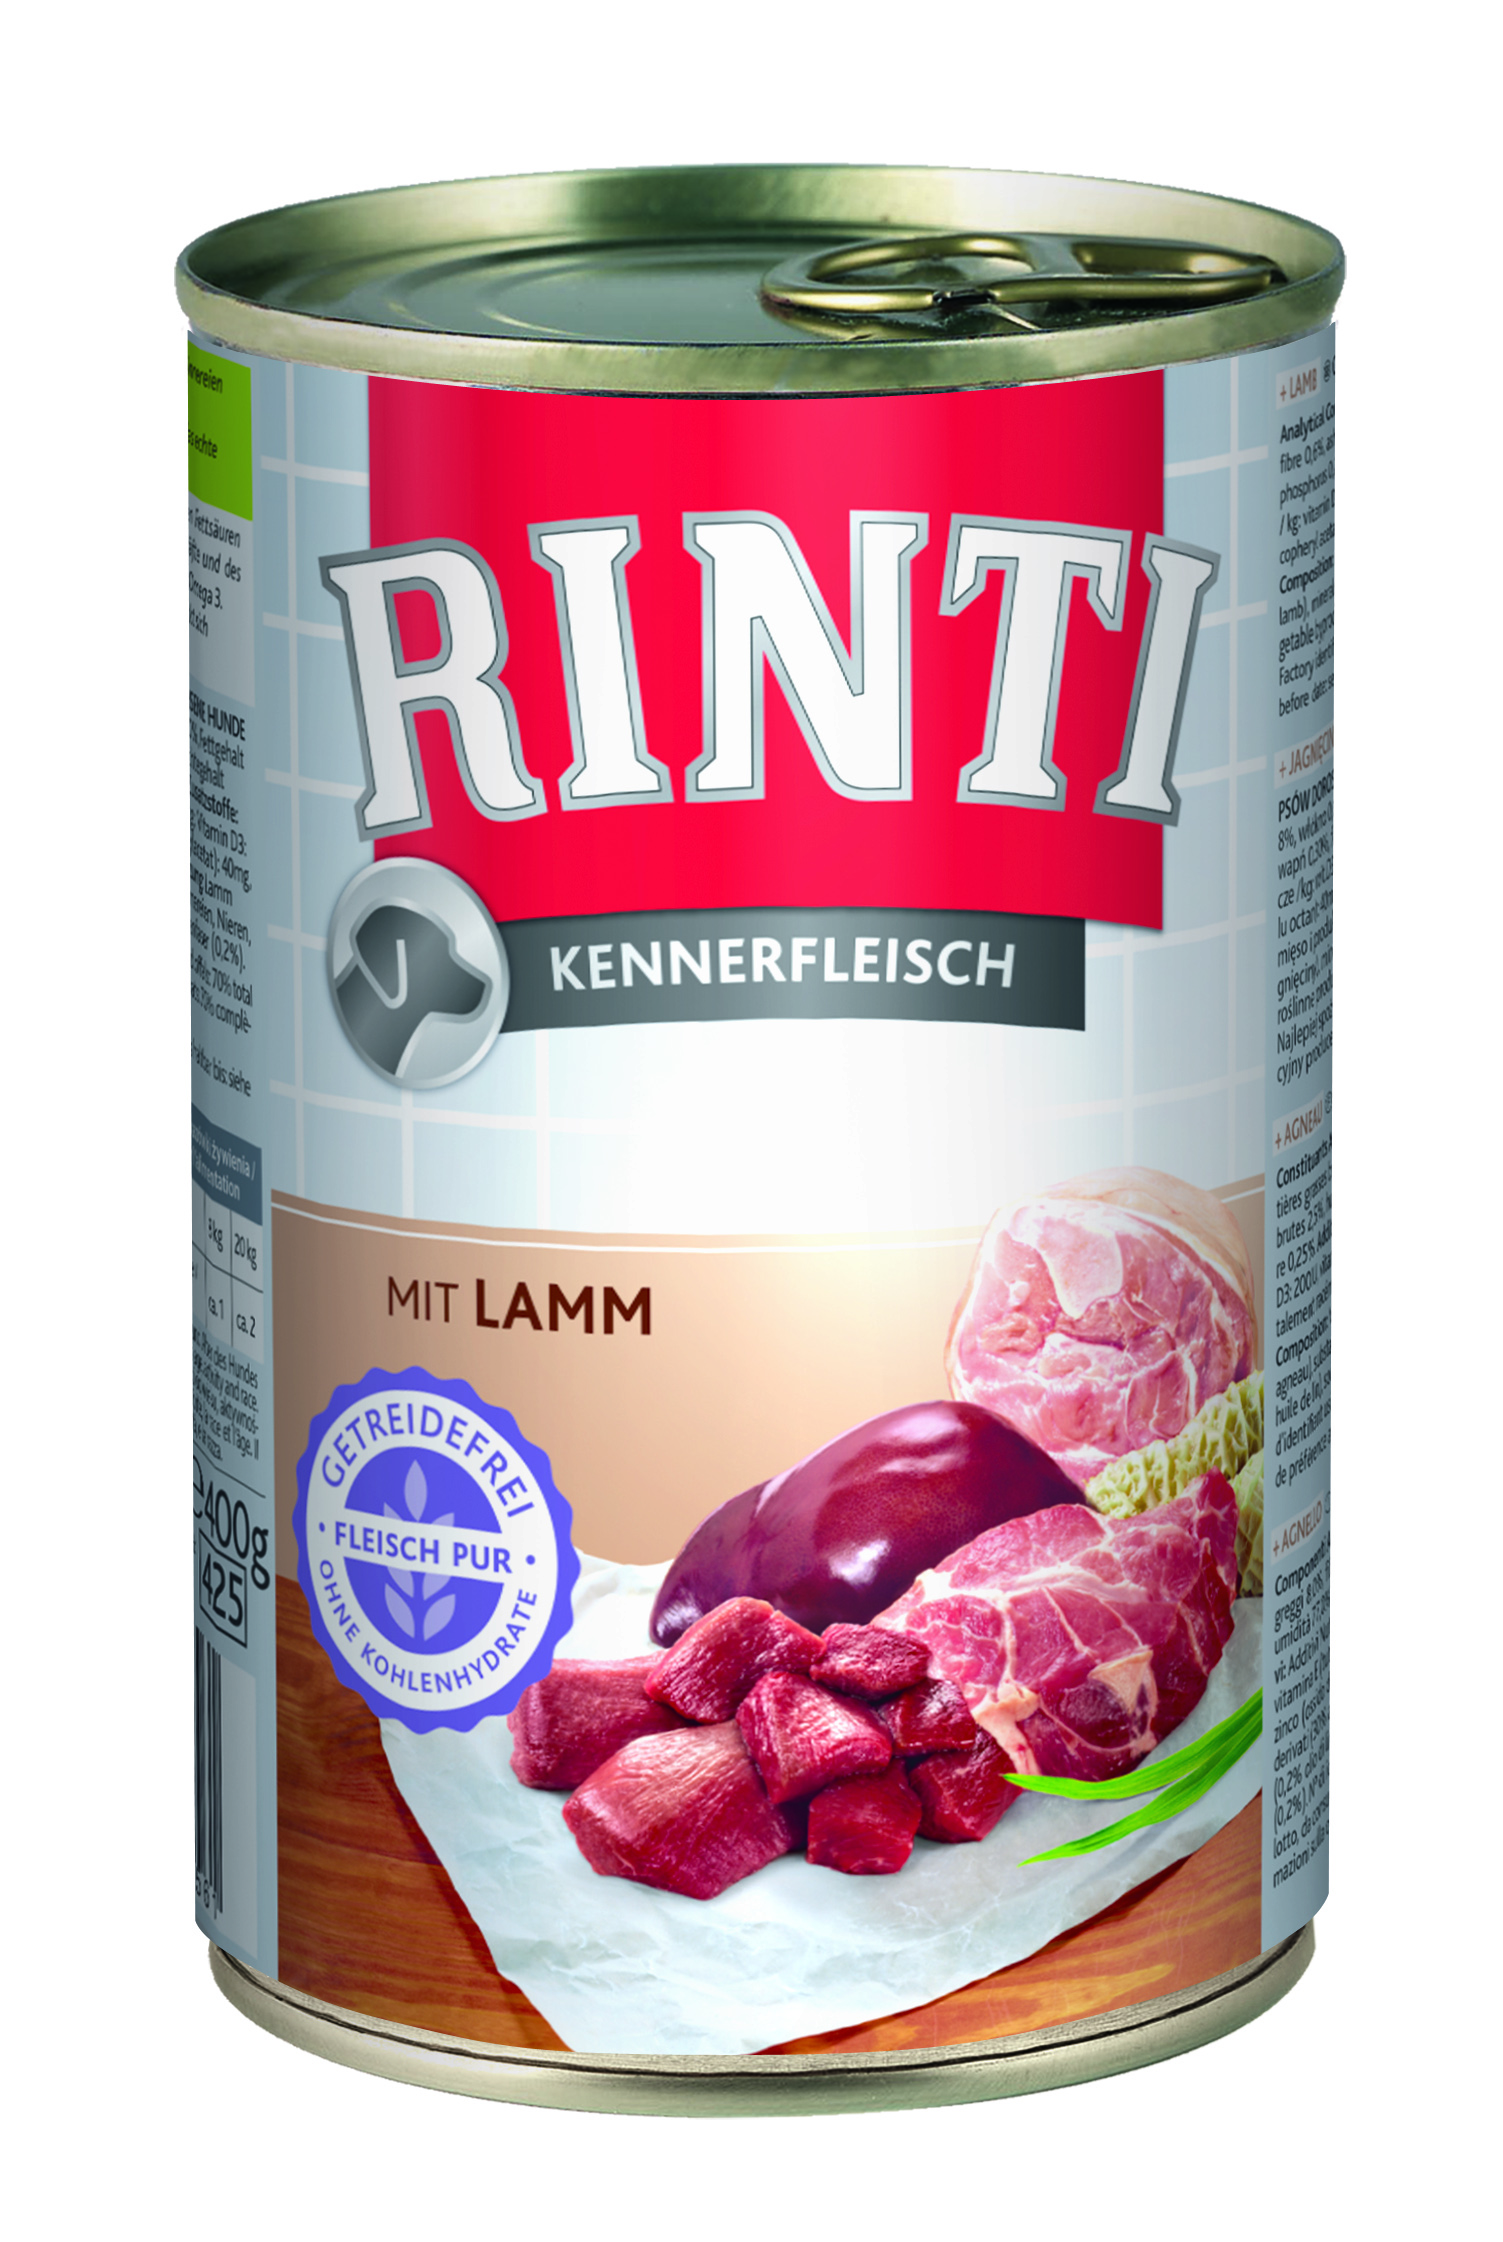 Rinti Kennerfleisch - mit Lamm